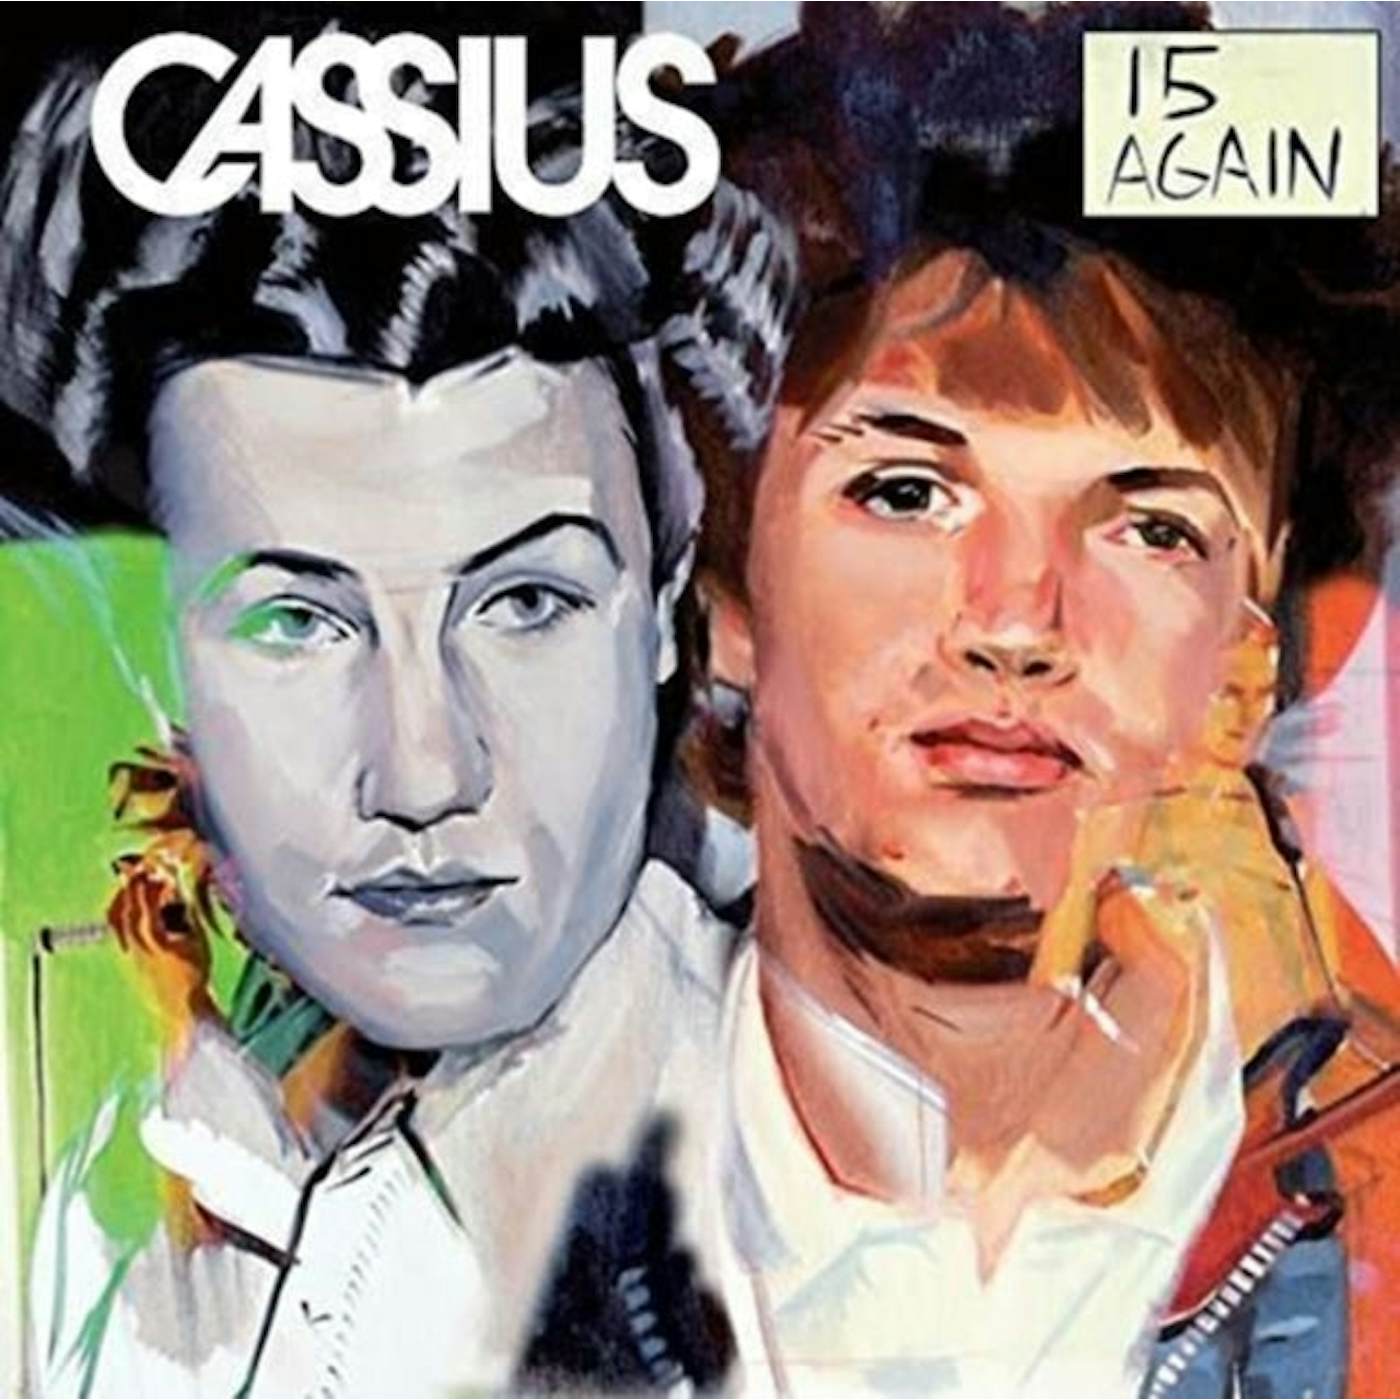 Cassius LP - 15 Again (Vinyl)